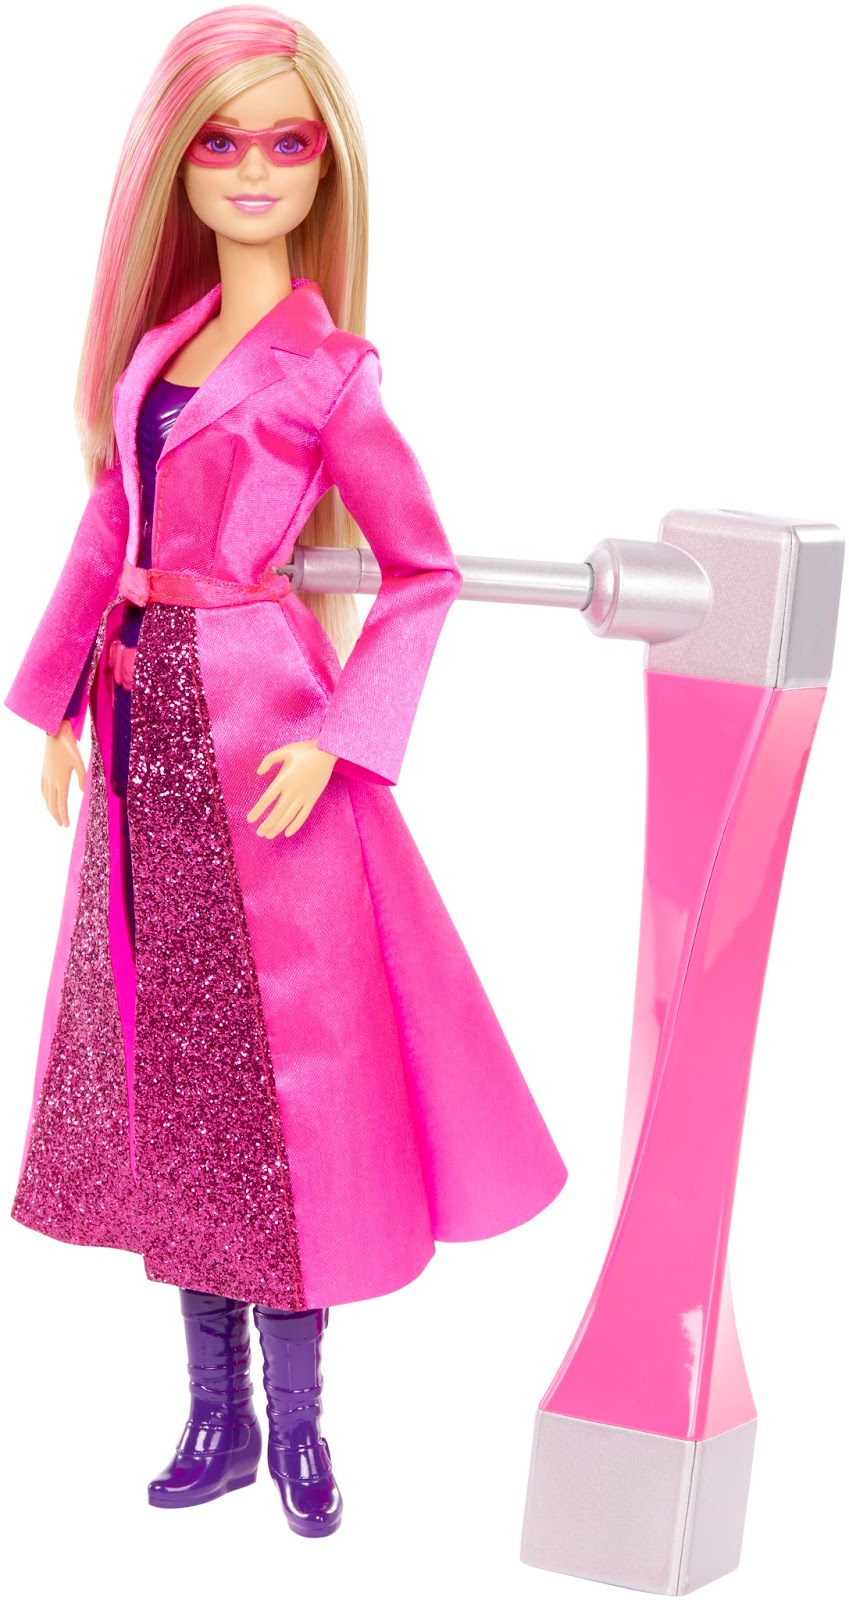 vermogen Benodigdheden serveerster Proefkonijn gezocht: Barbie® Geheim Agent - Getest op kinderen